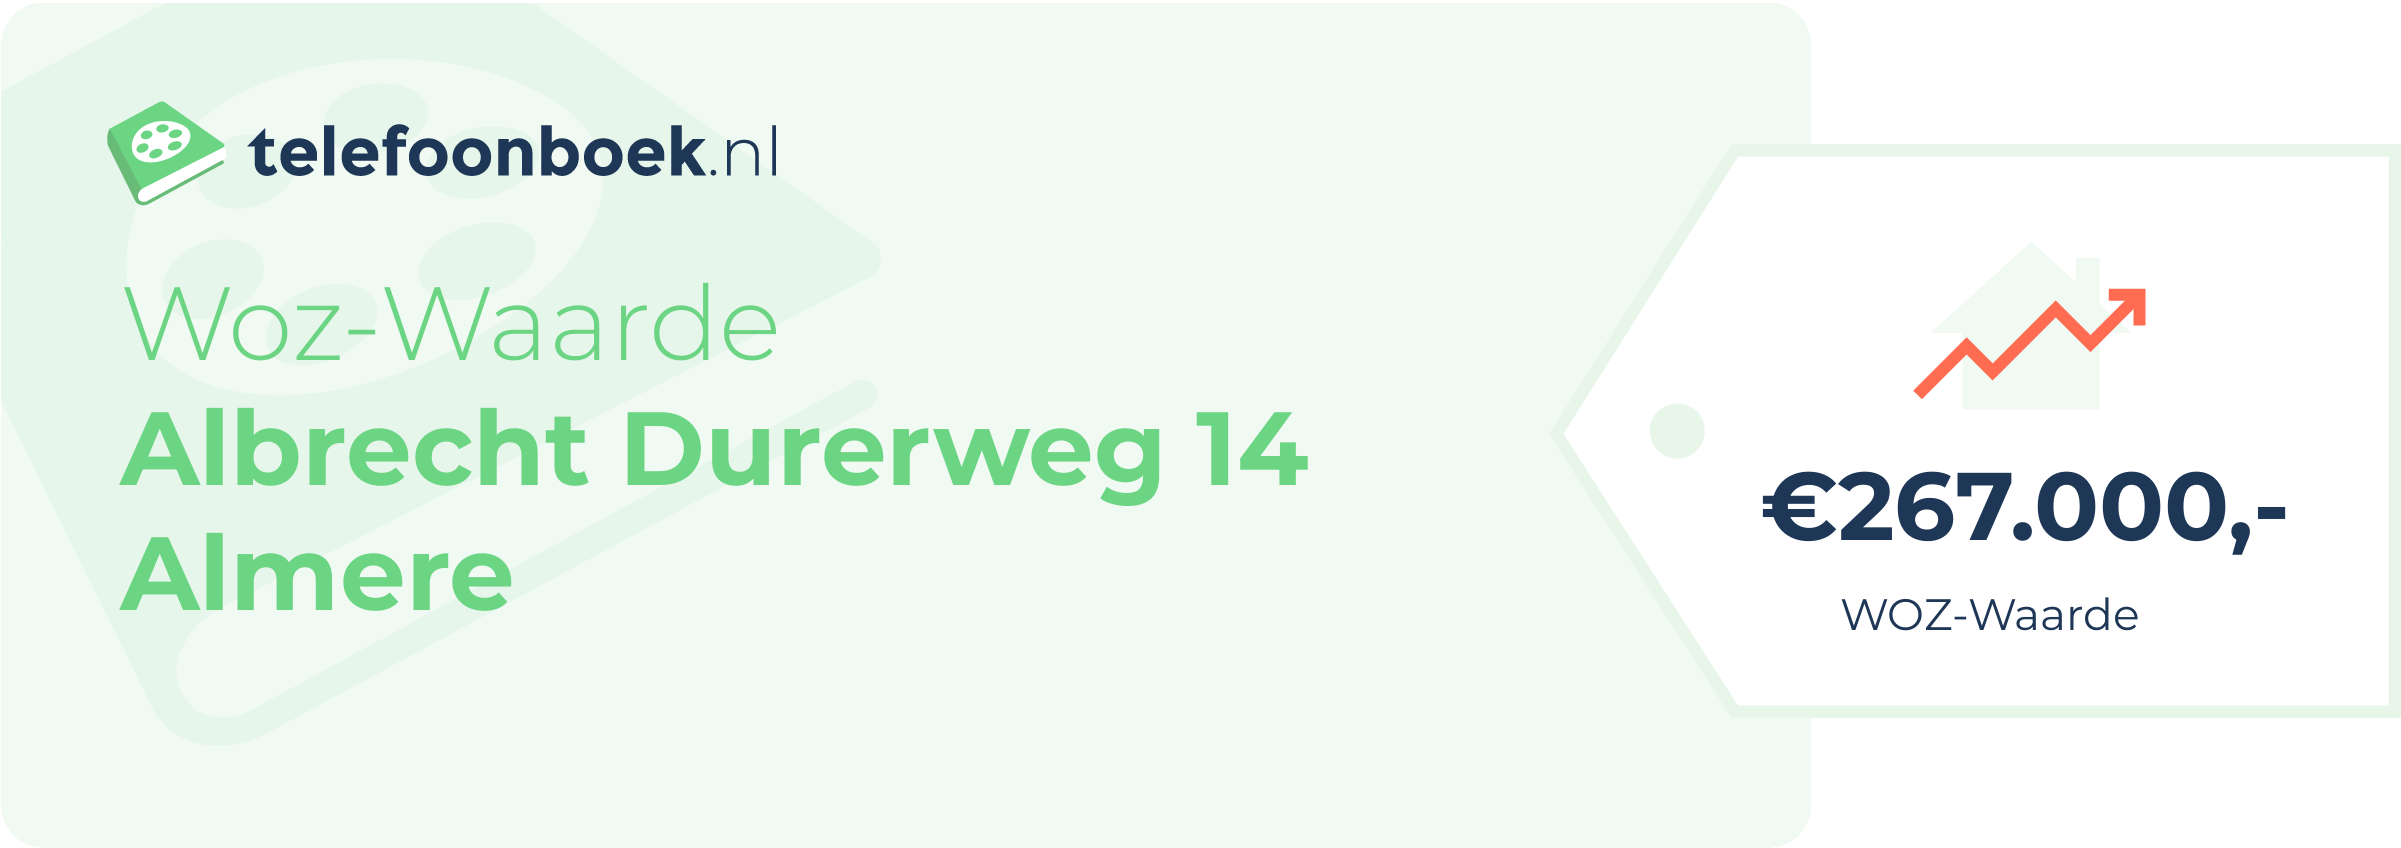 WOZ-waarde Albrecht Durerweg 14 Almere